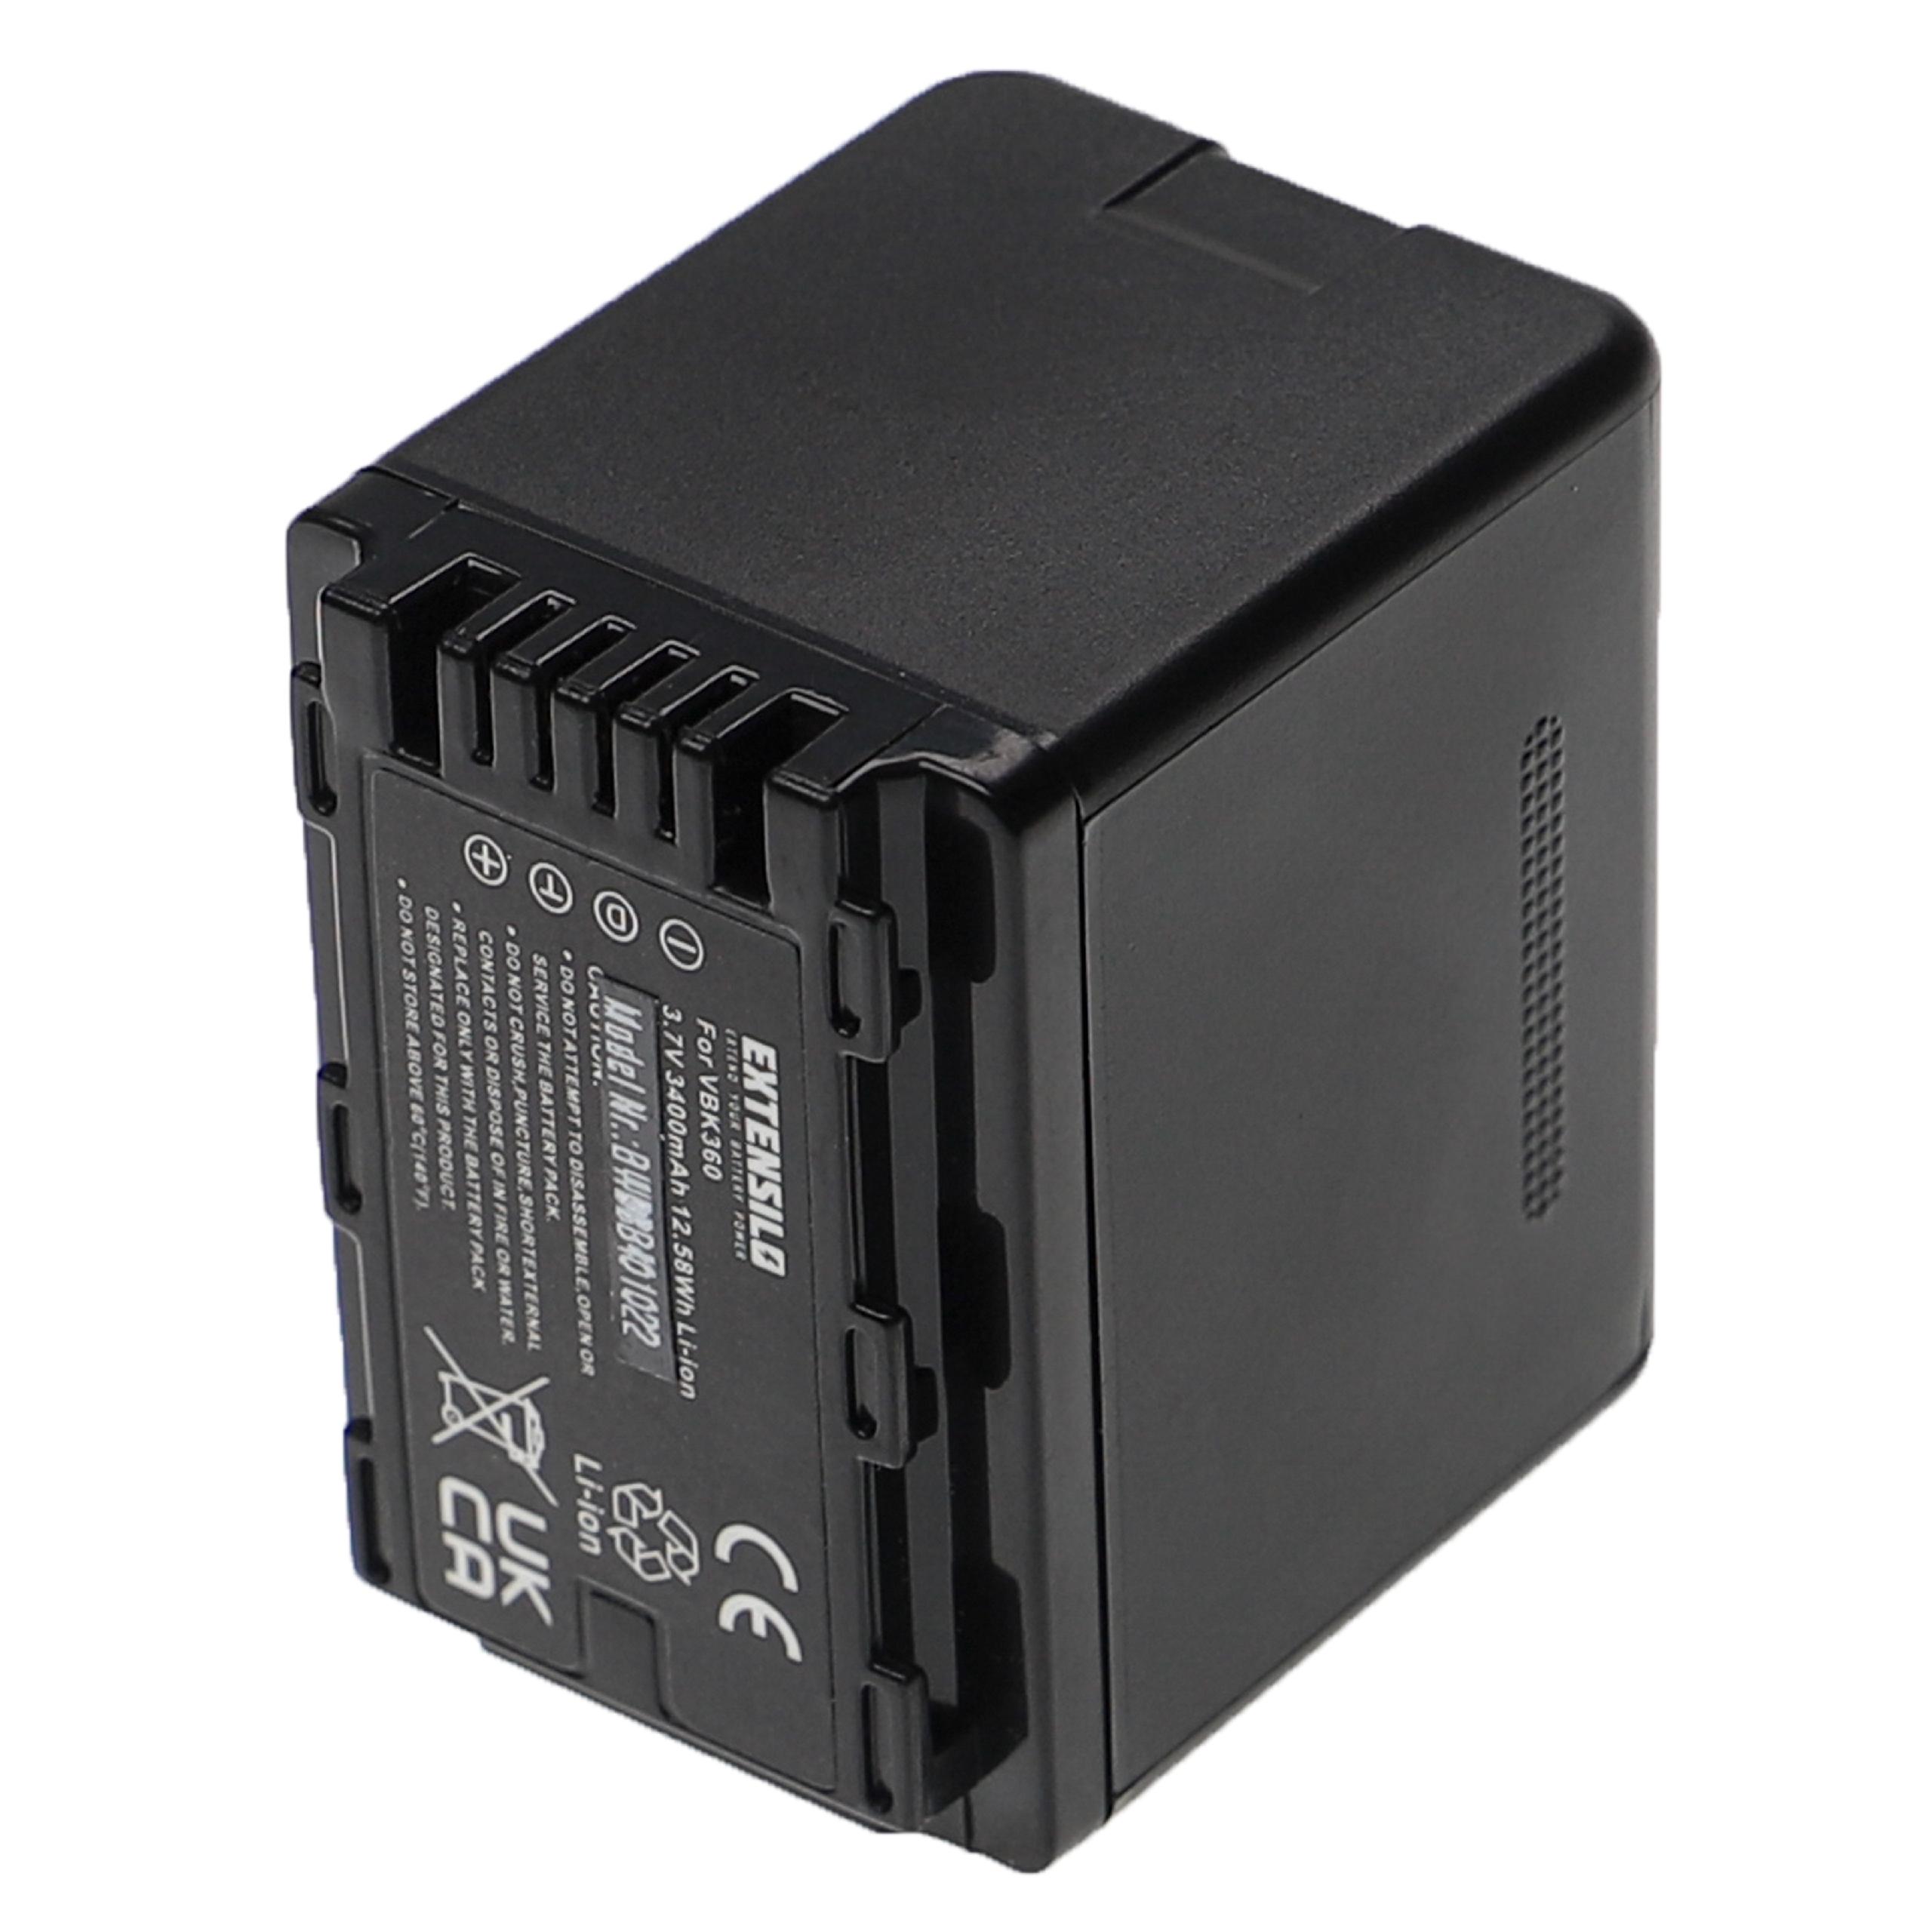 Batteria sostituisce Panasonic VW-VBK360 per fotocamera Panasonic - 3400mAh 3,7V Li-Ion